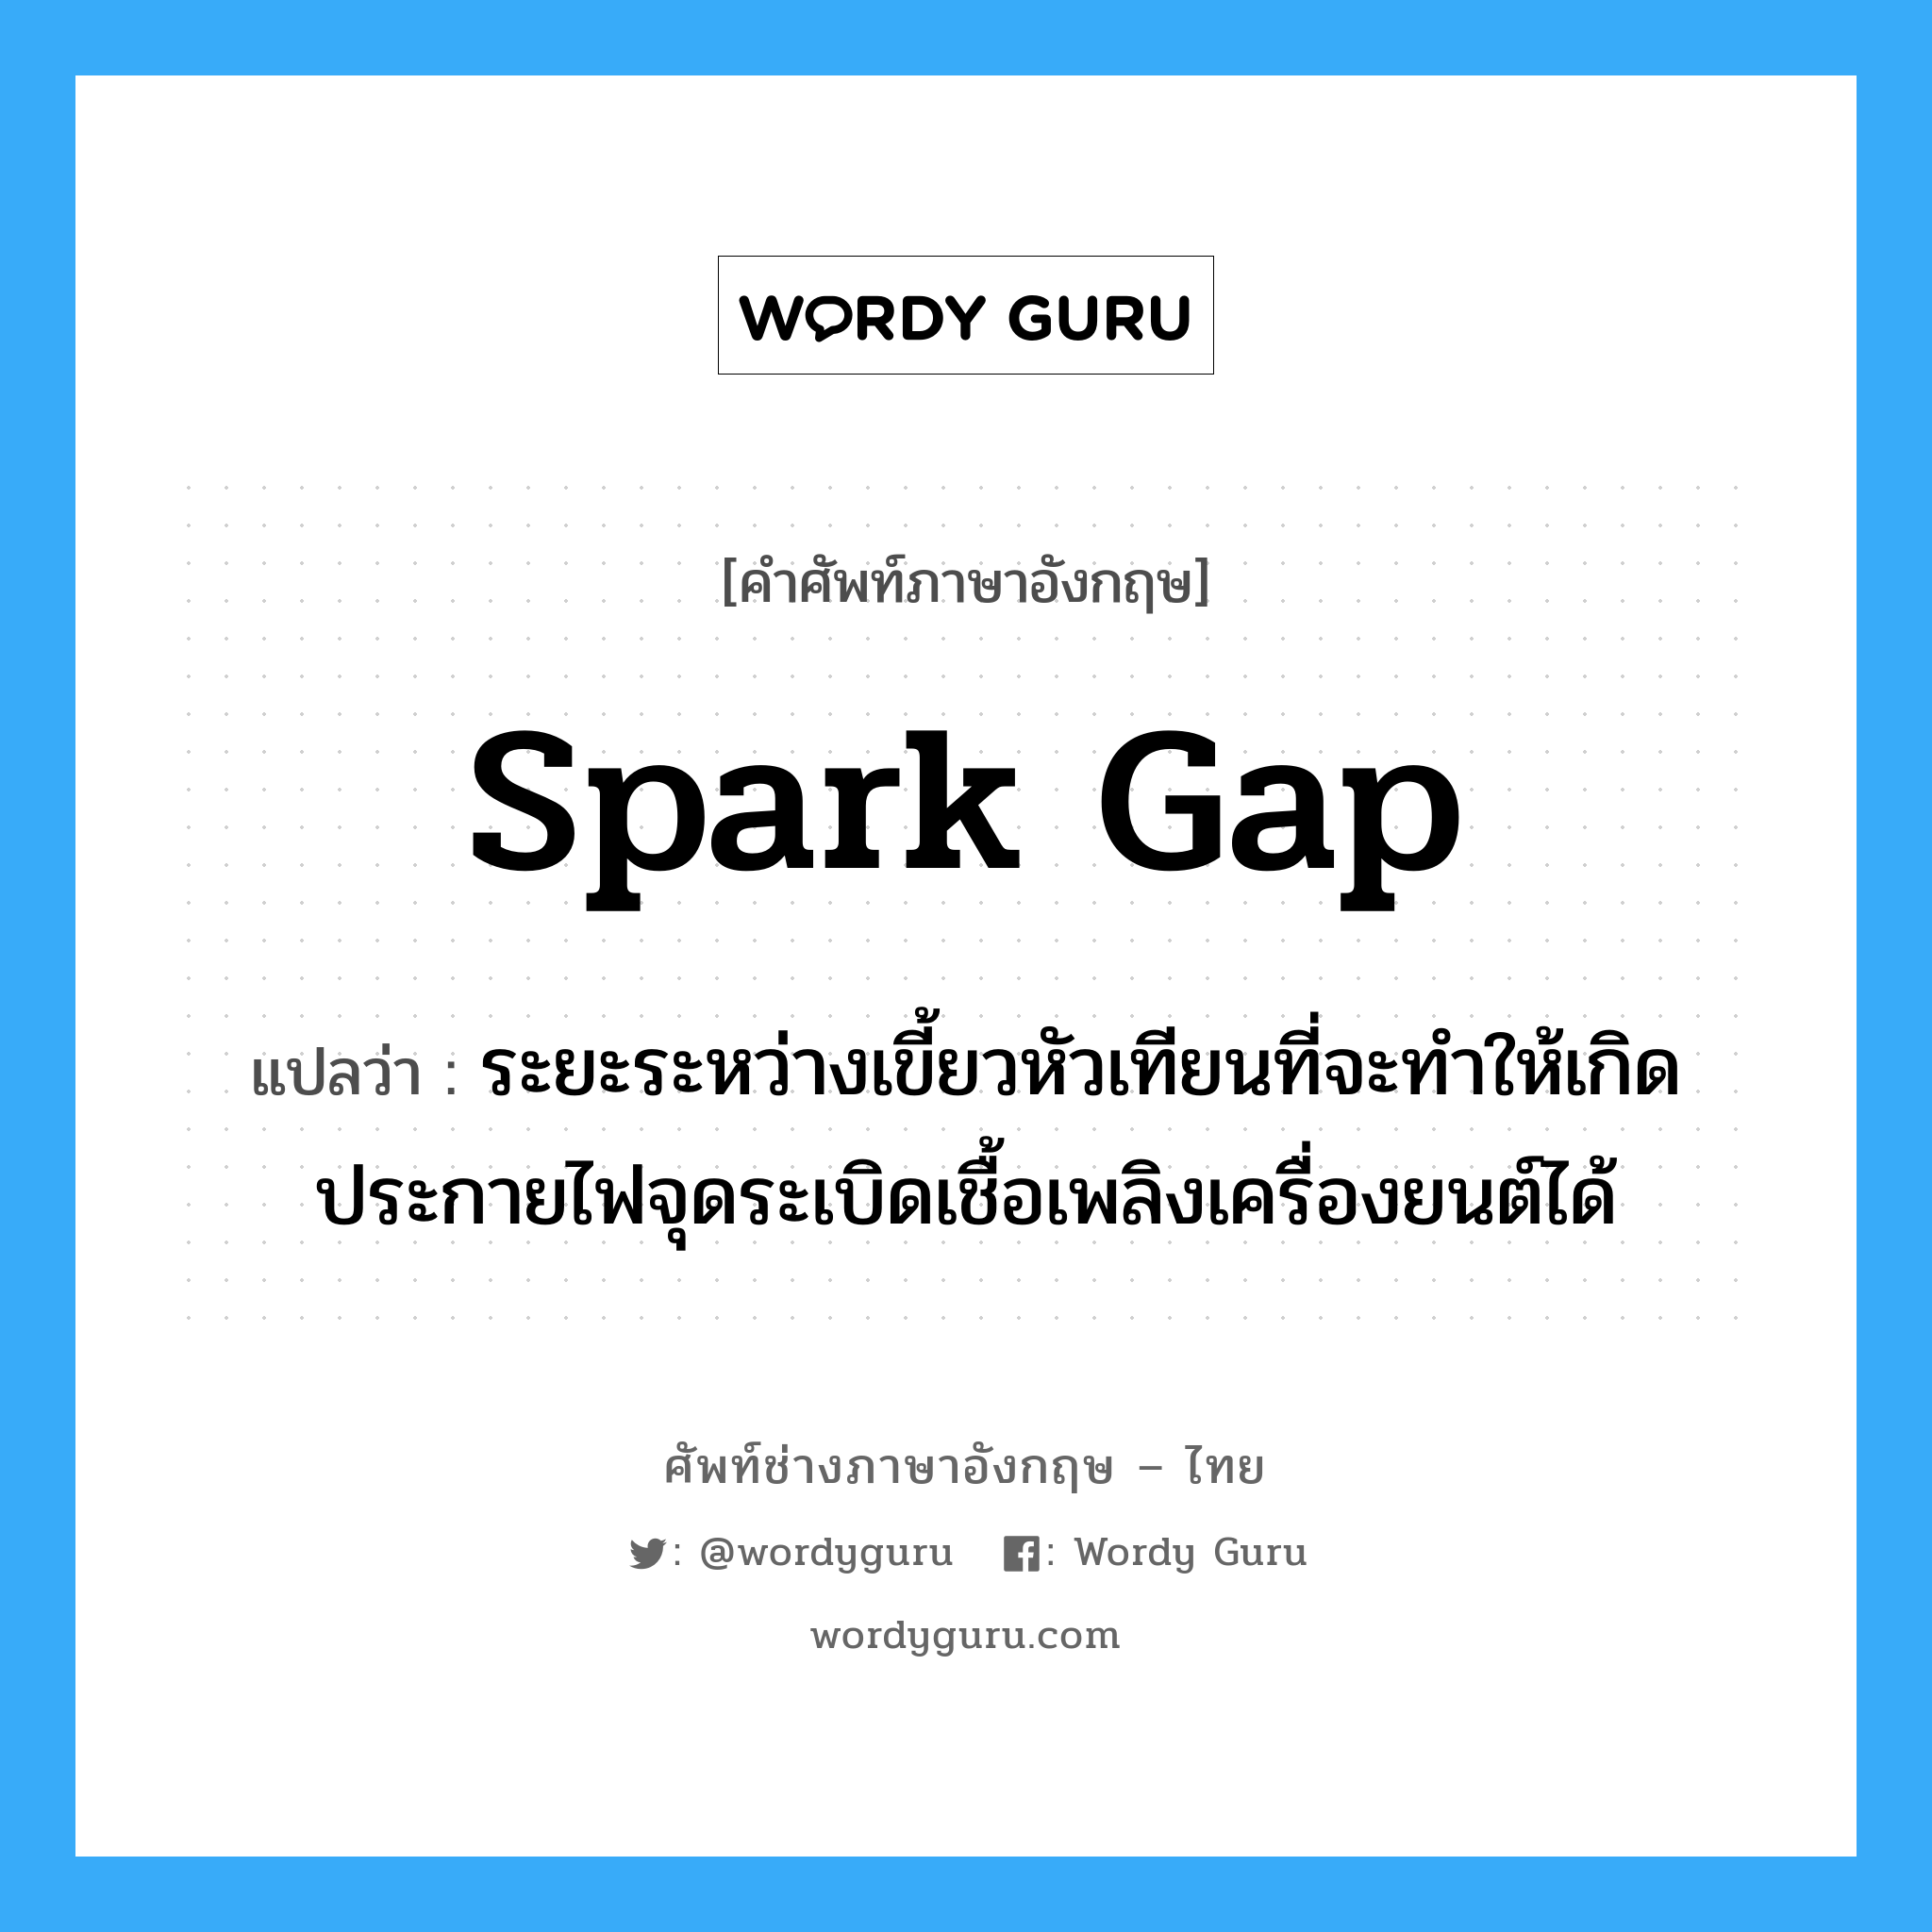 spark gap แปลว่า?, คำศัพท์ช่างภาษาอังกฤษ - ไทย spark gap คำศัพท์ภาษาอังกฤษ spark gap แปลว่า ระยะระหว่างเขี้ยวหัวเทียนที่จะทำให้เกิดประกายไฟจุดระเบิดเชื้อเพลิงเครื่องยนต์ได้